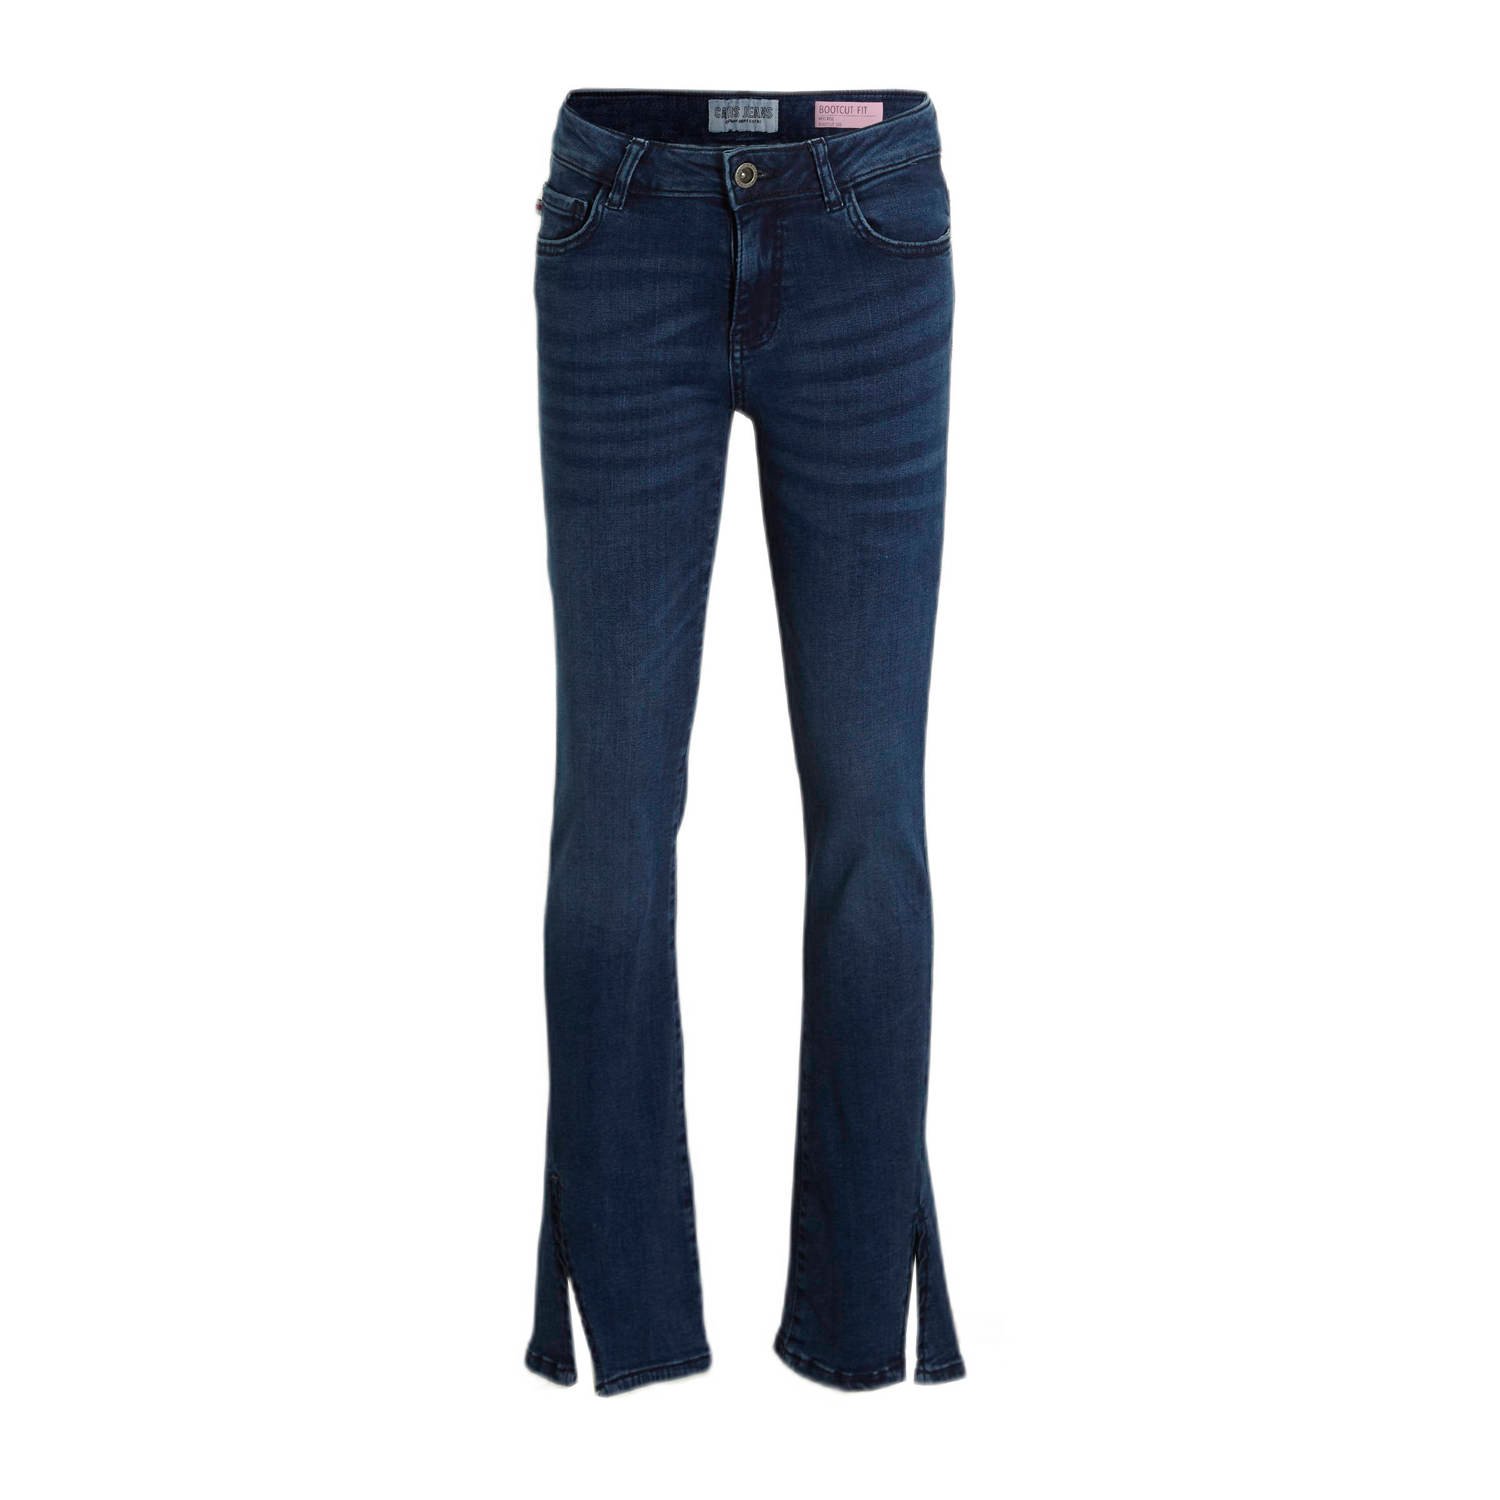 Cars bootcut jeans SPICKIE dark used Blauw Meisjes Stretchdenim Effen 122